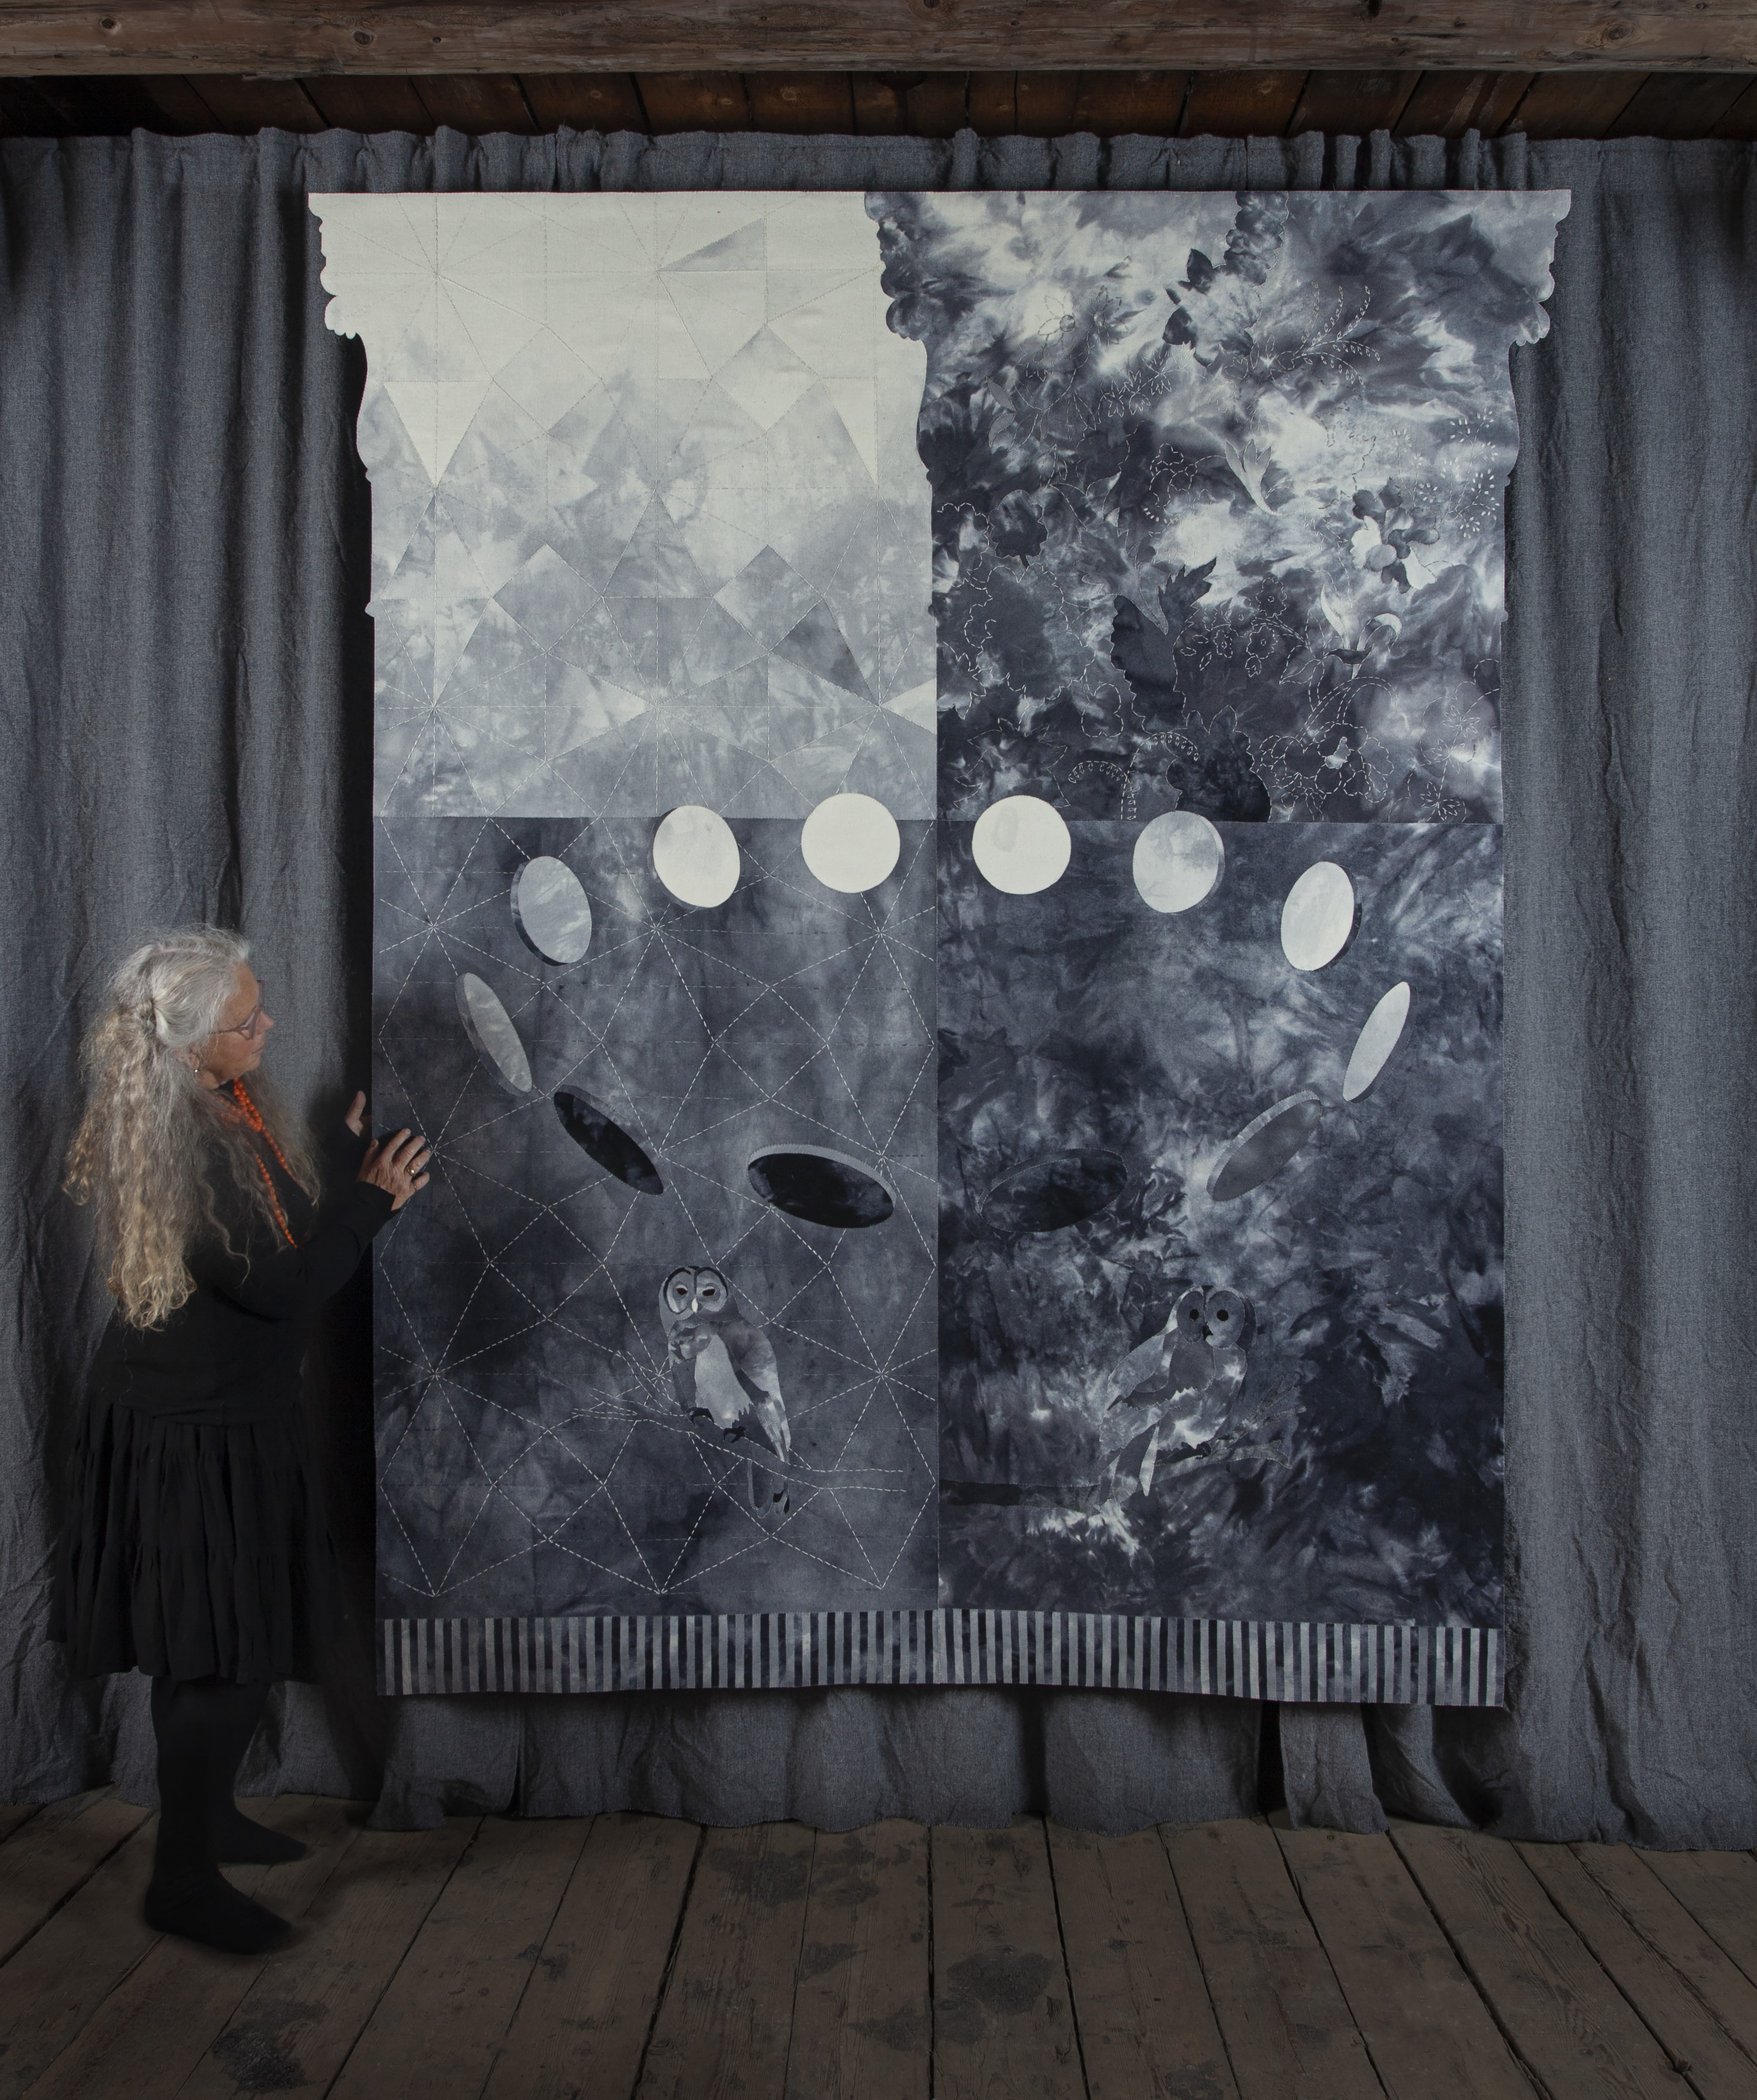 Ugler går igjen i flere av Inger Johanne Rasmussens kunstverk. «Voktere» skiller seg ut med sin konsekvente bruk av hele gråskalaen fra sort til hvitt.